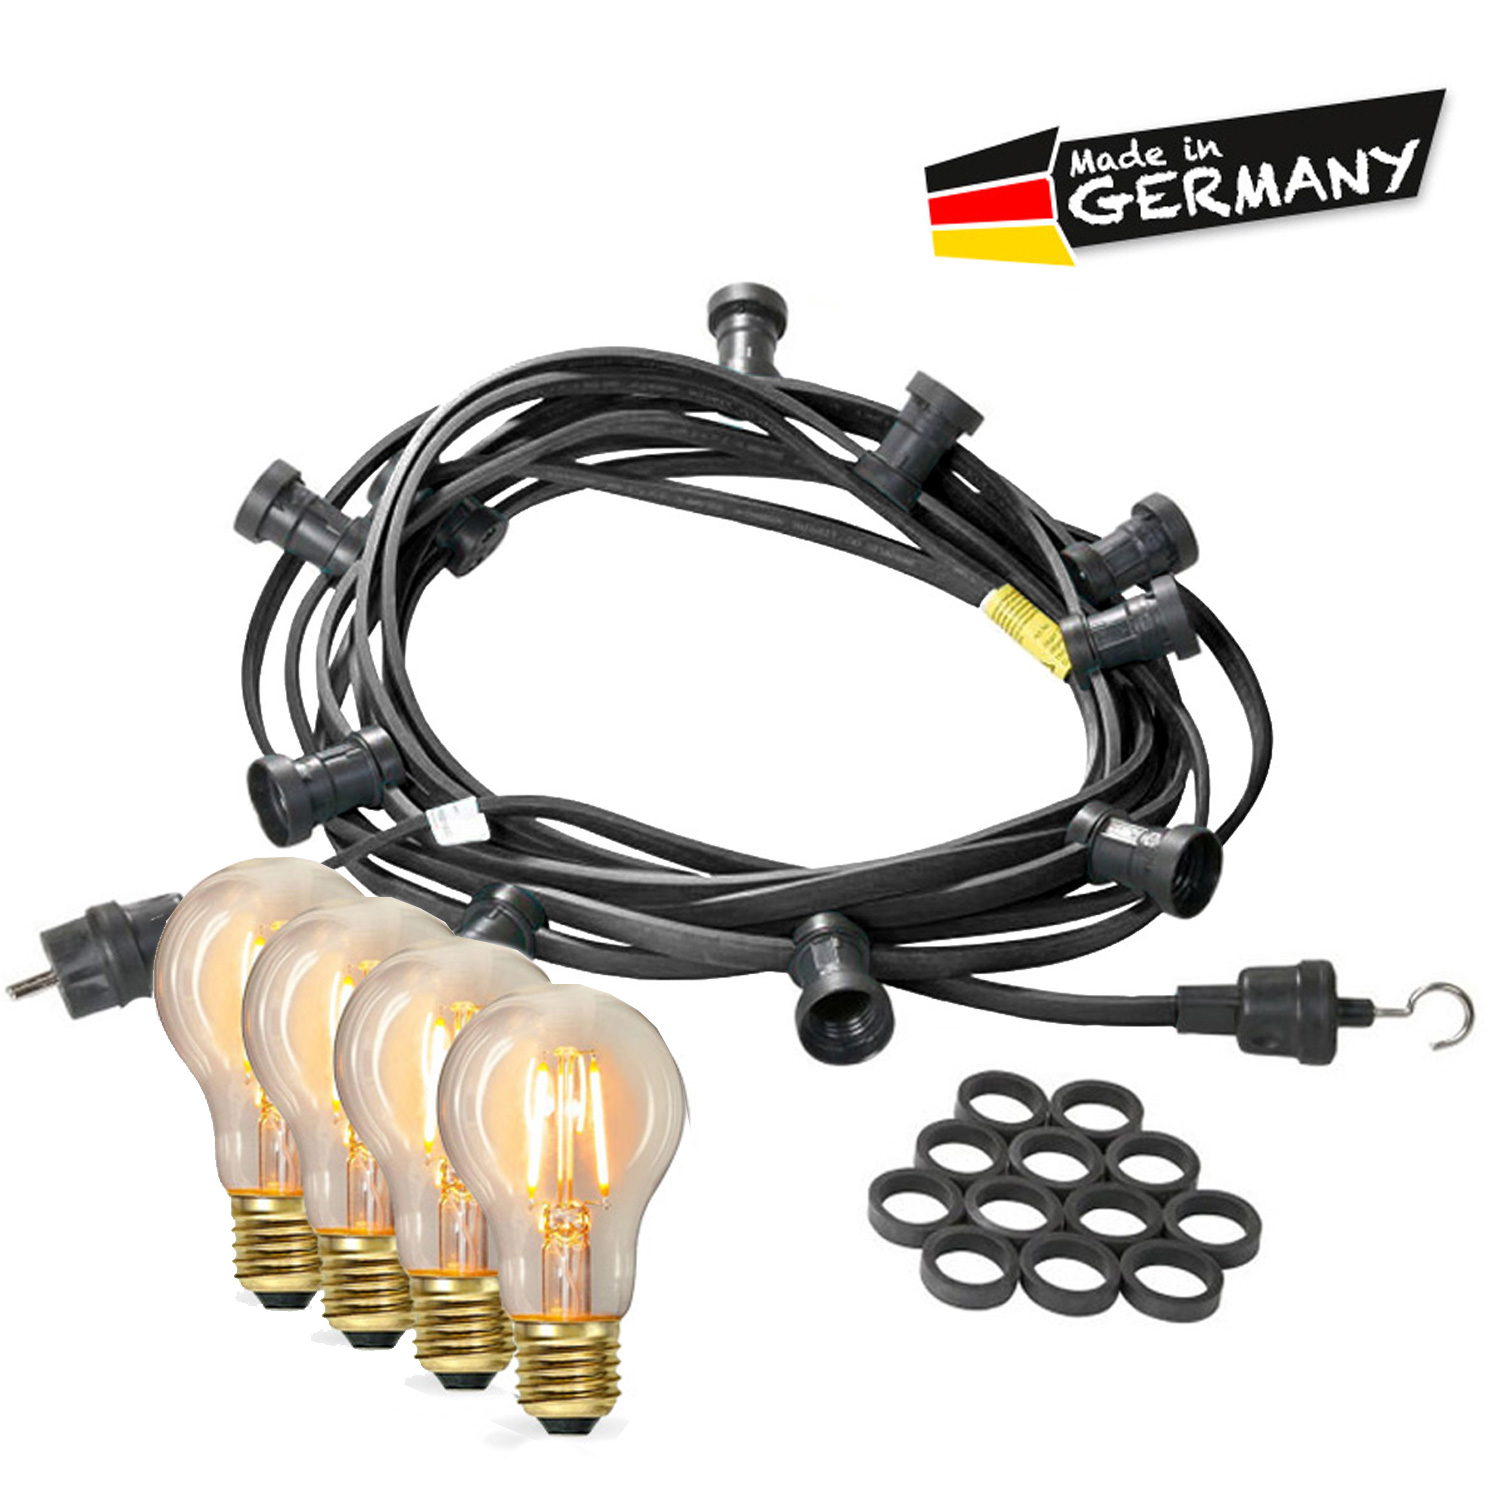 Illu-/Partylichterkette 40m - Außenlichterkette - Made in Germany - 40 x Edison LED Filamentlampen